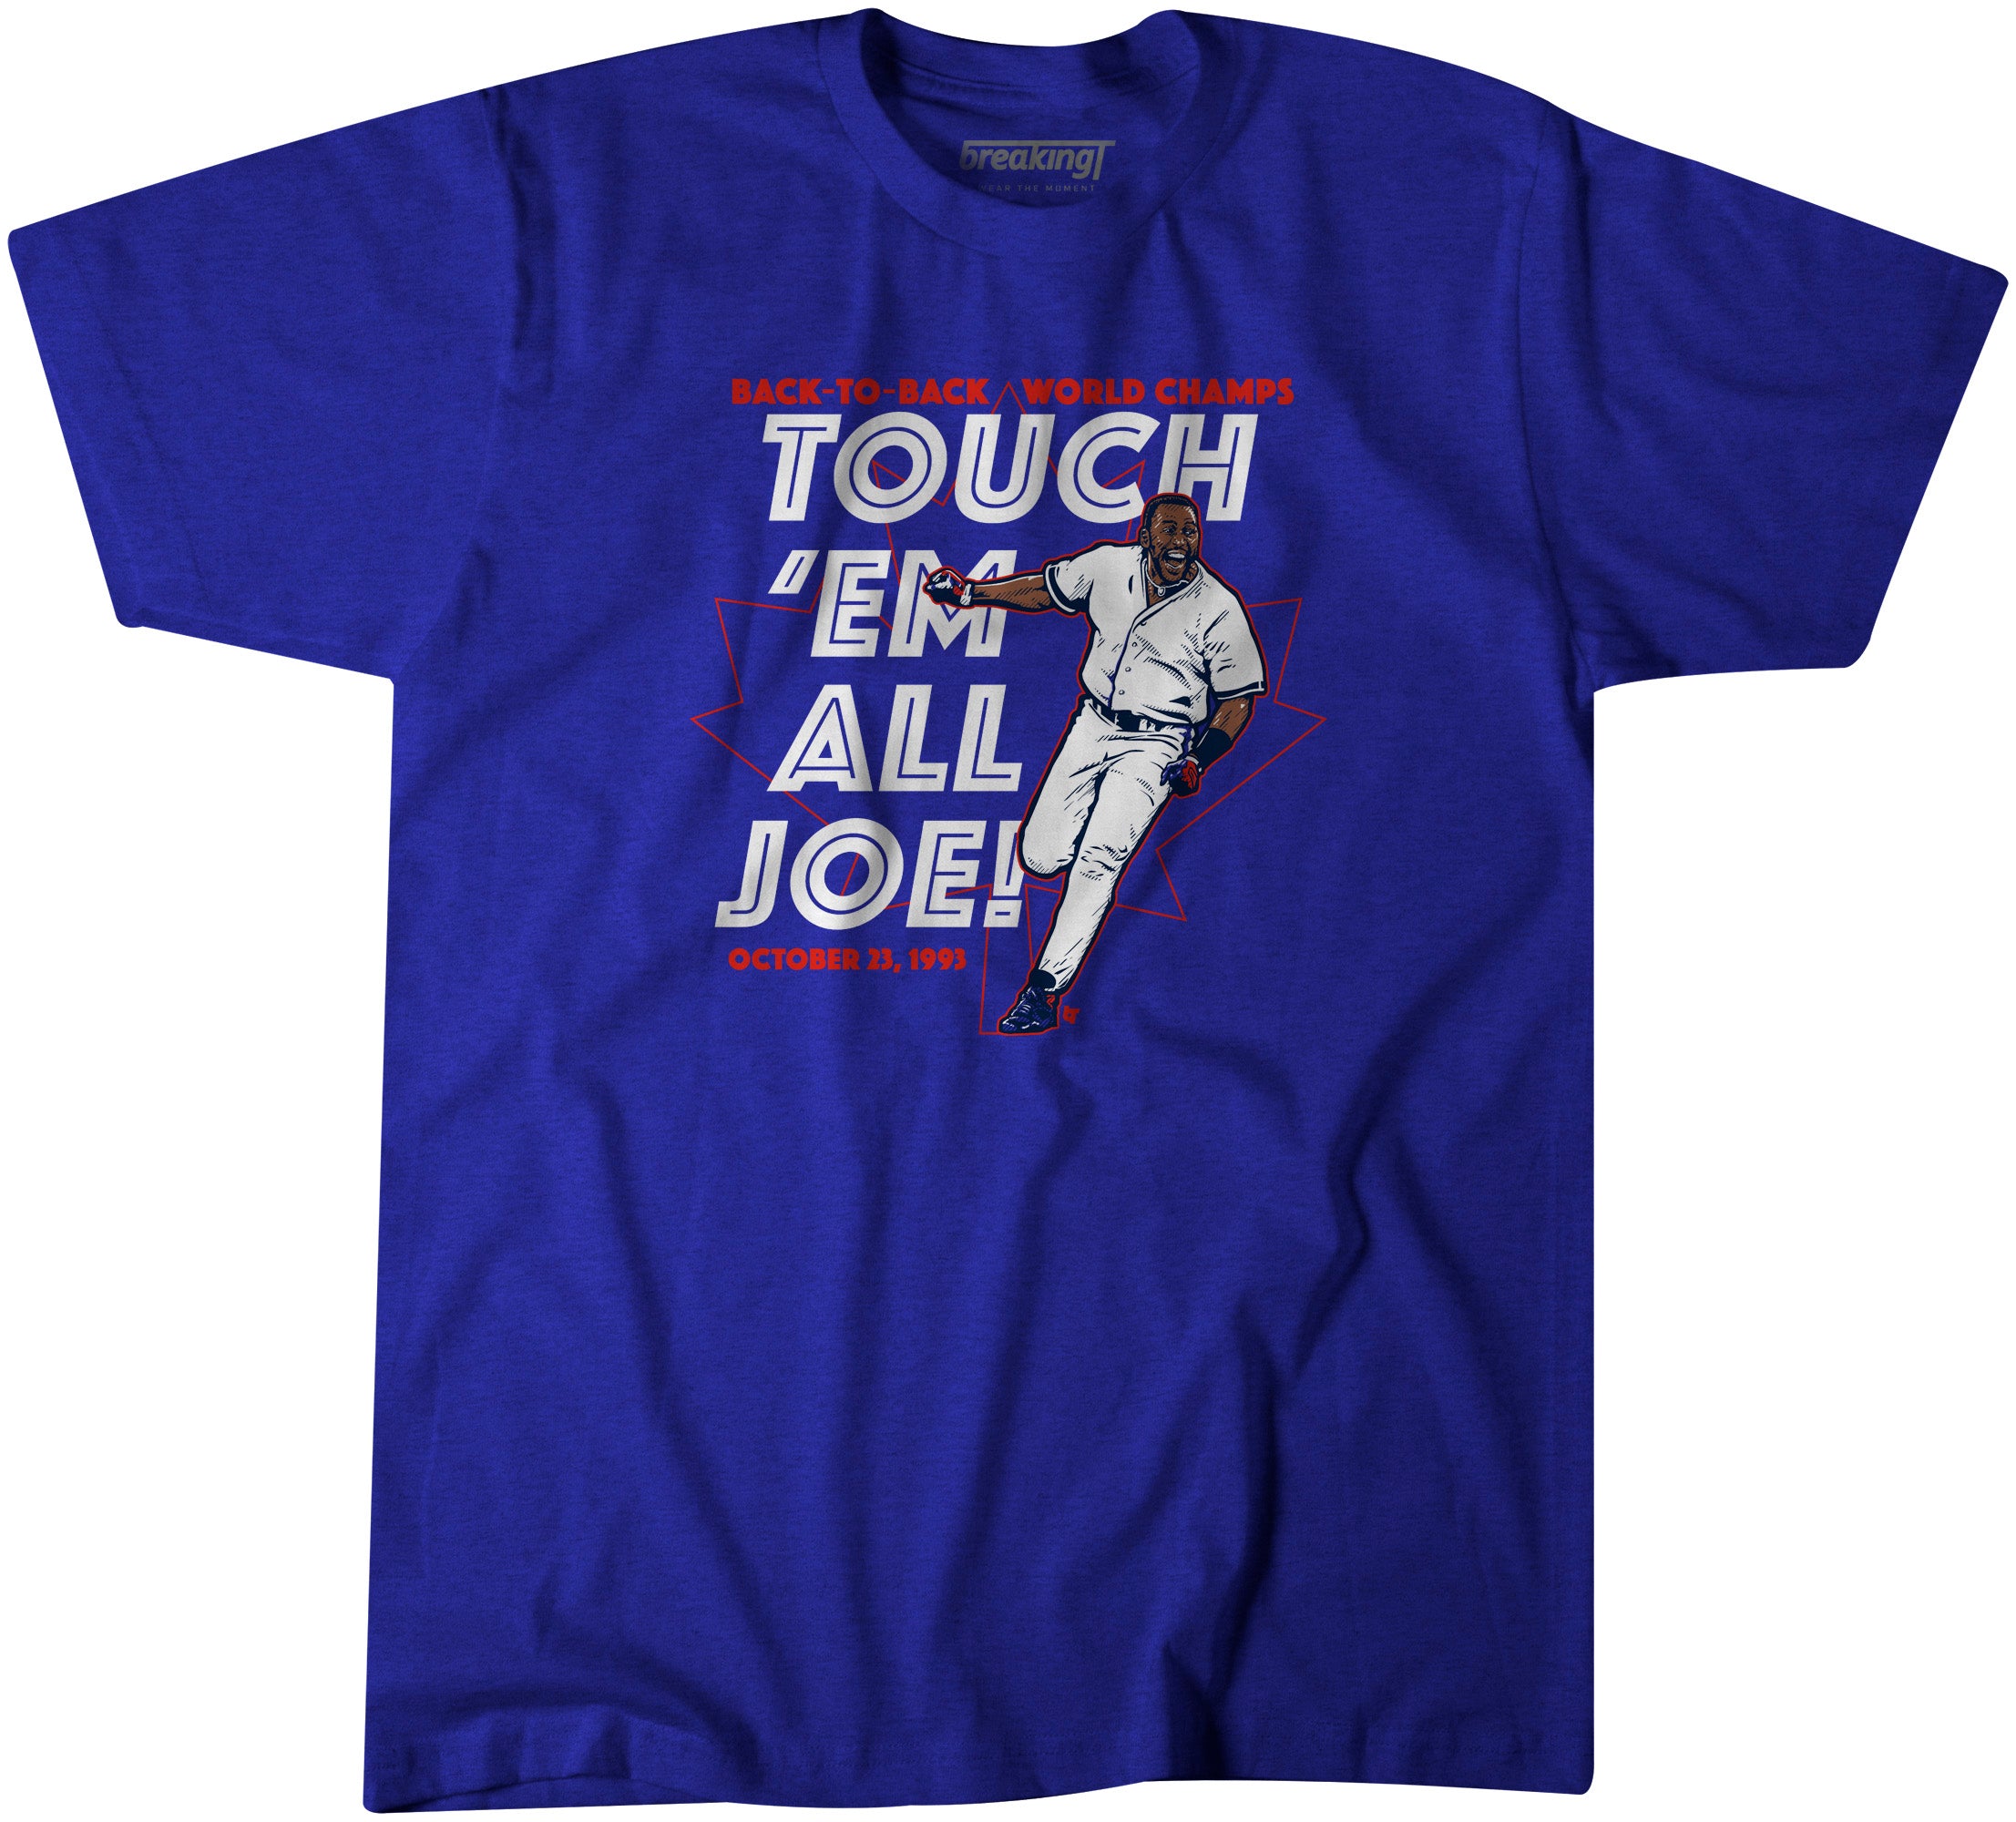 Touch 'Em All Joe! Carter's World Series Winning Home Run! 